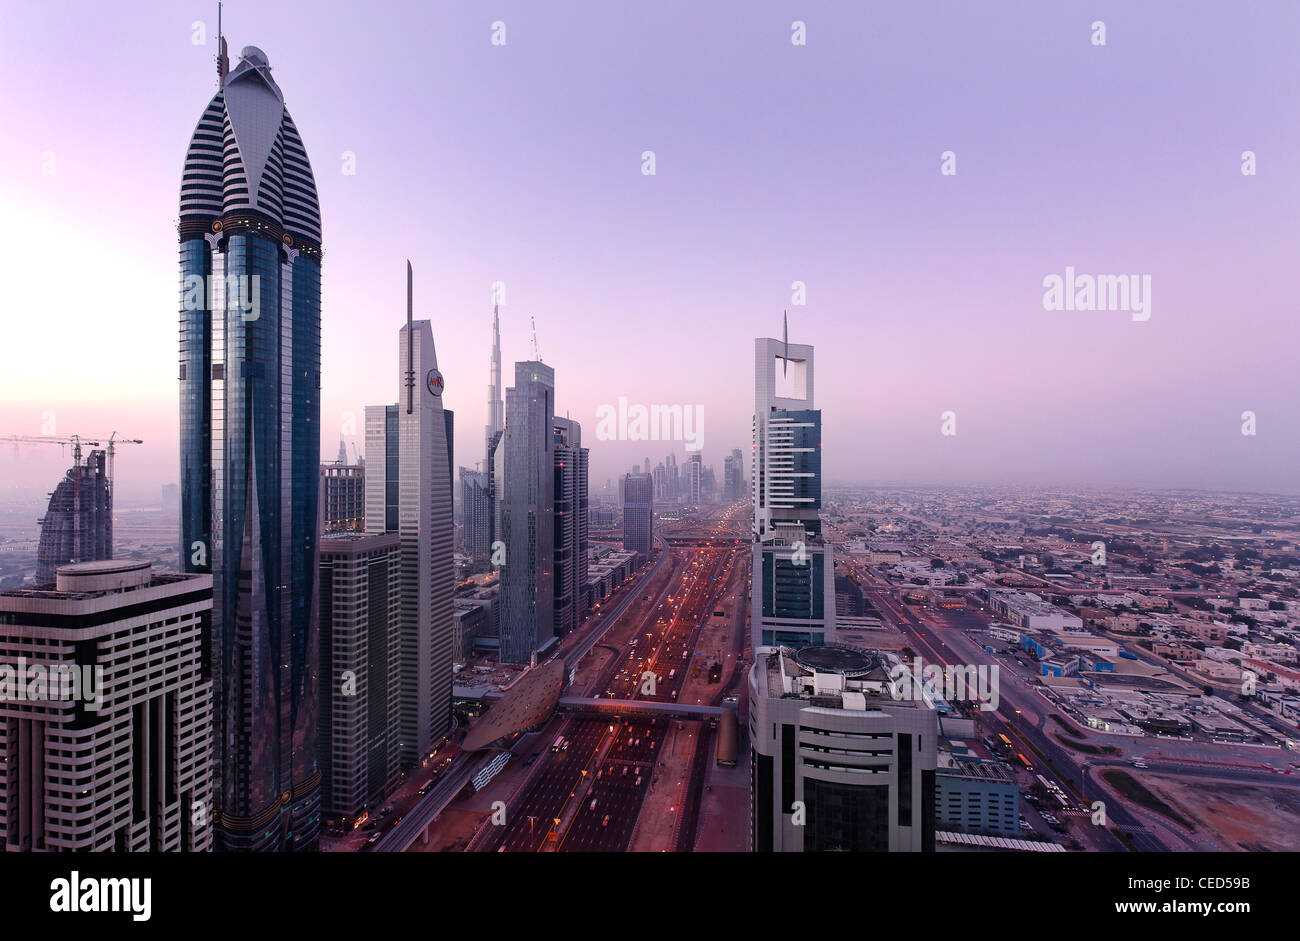 Vue sur le centre-ville de Dubaï, à gauche ROSE RAYHAAN by Rotana, tours, gratte-ciel, d'hôtels, l'architecture moderne, Sheikh Zayed Road Banque D'Images